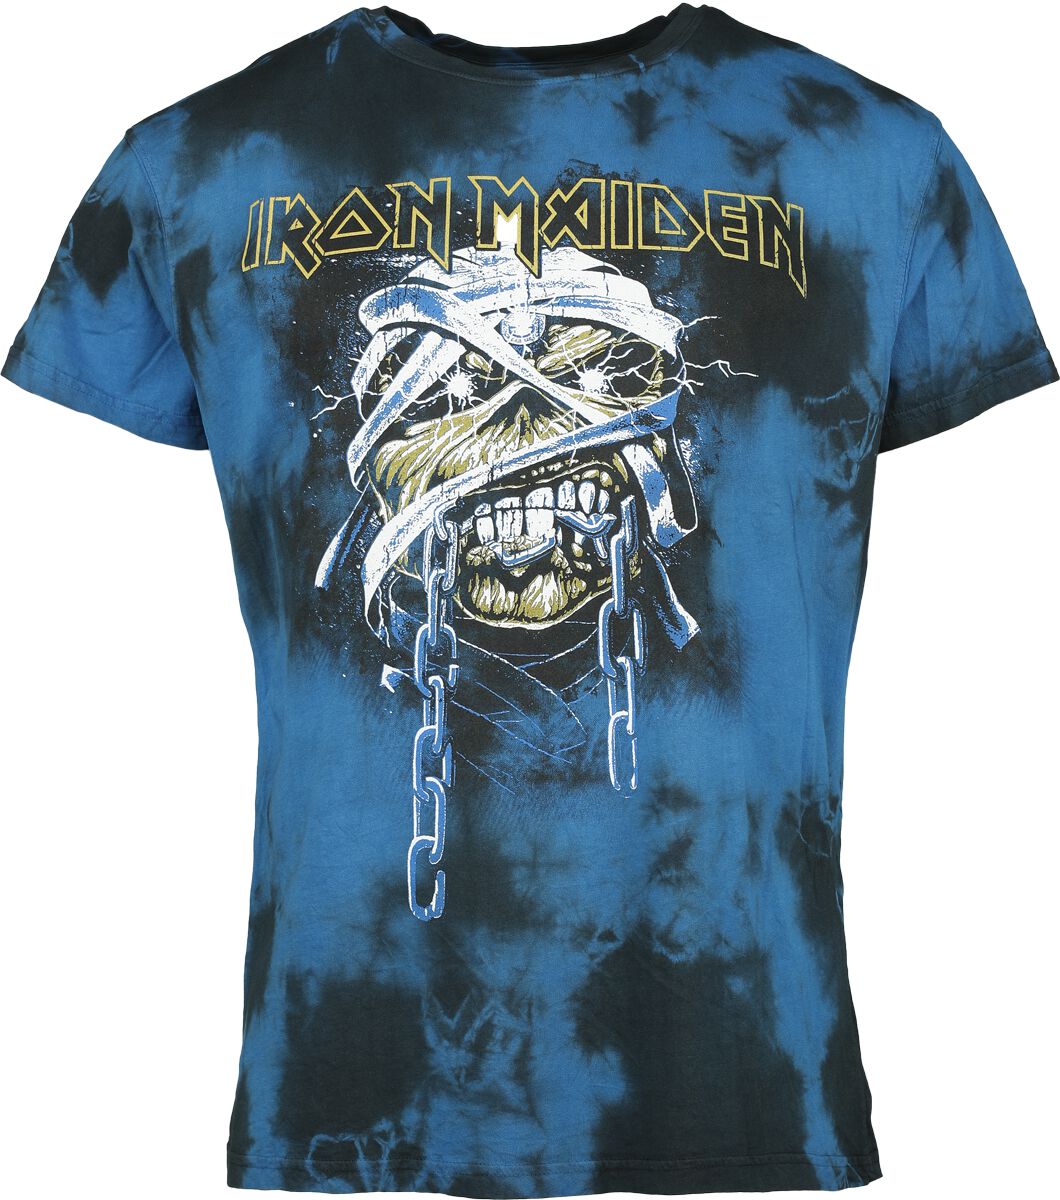 Iron Maiden T-Shirt - Powerslave - Mummy Head - S bis XXL - für Männer - Größe S - schwarz/blau  - Lizenziertes Merchandise!